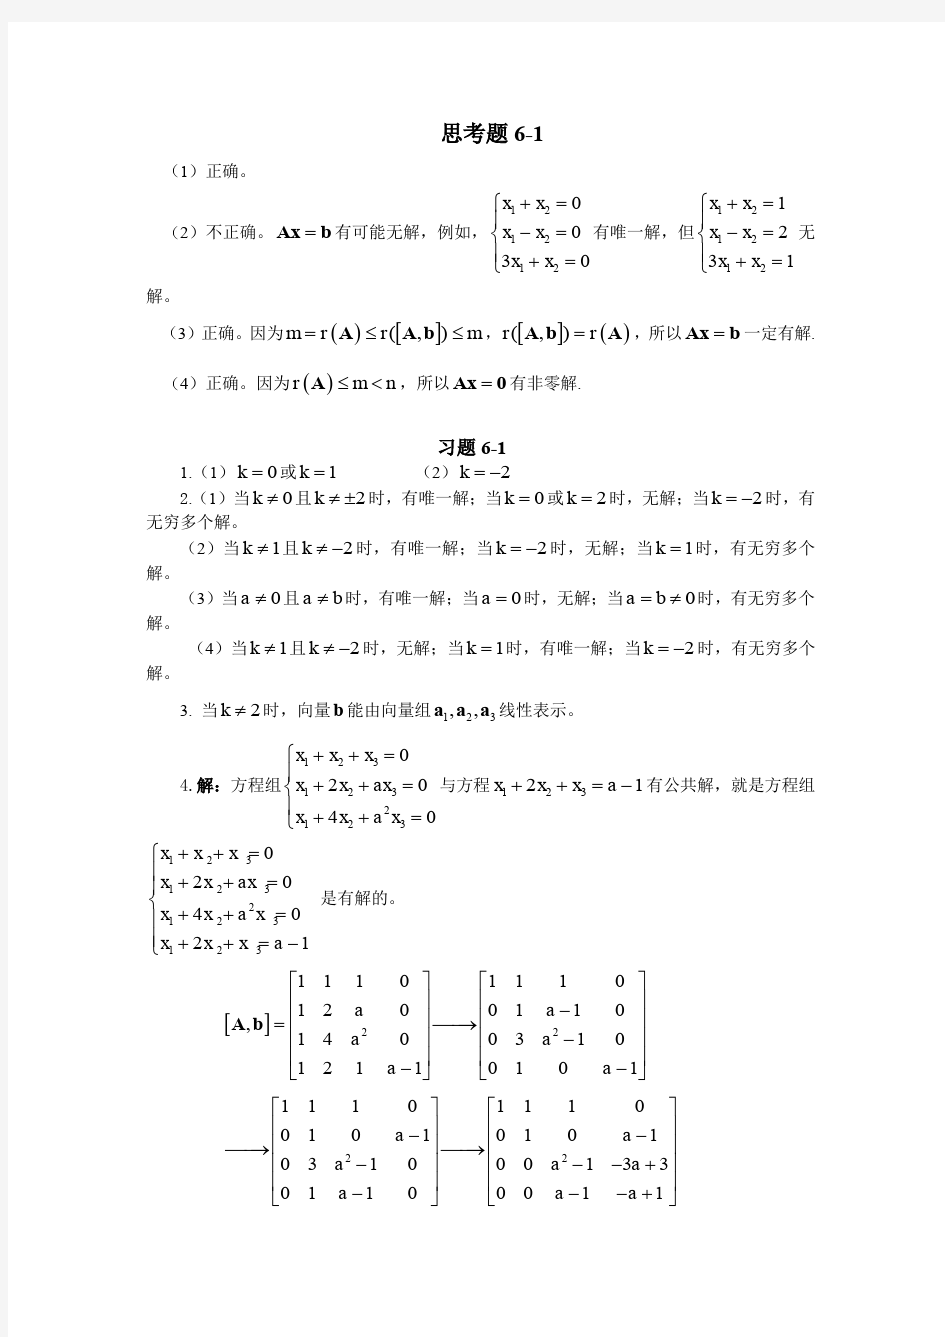 (仅供参考)线性代数与解析几何-课后答案-(代万基-廉庆荣)第6章习题答案